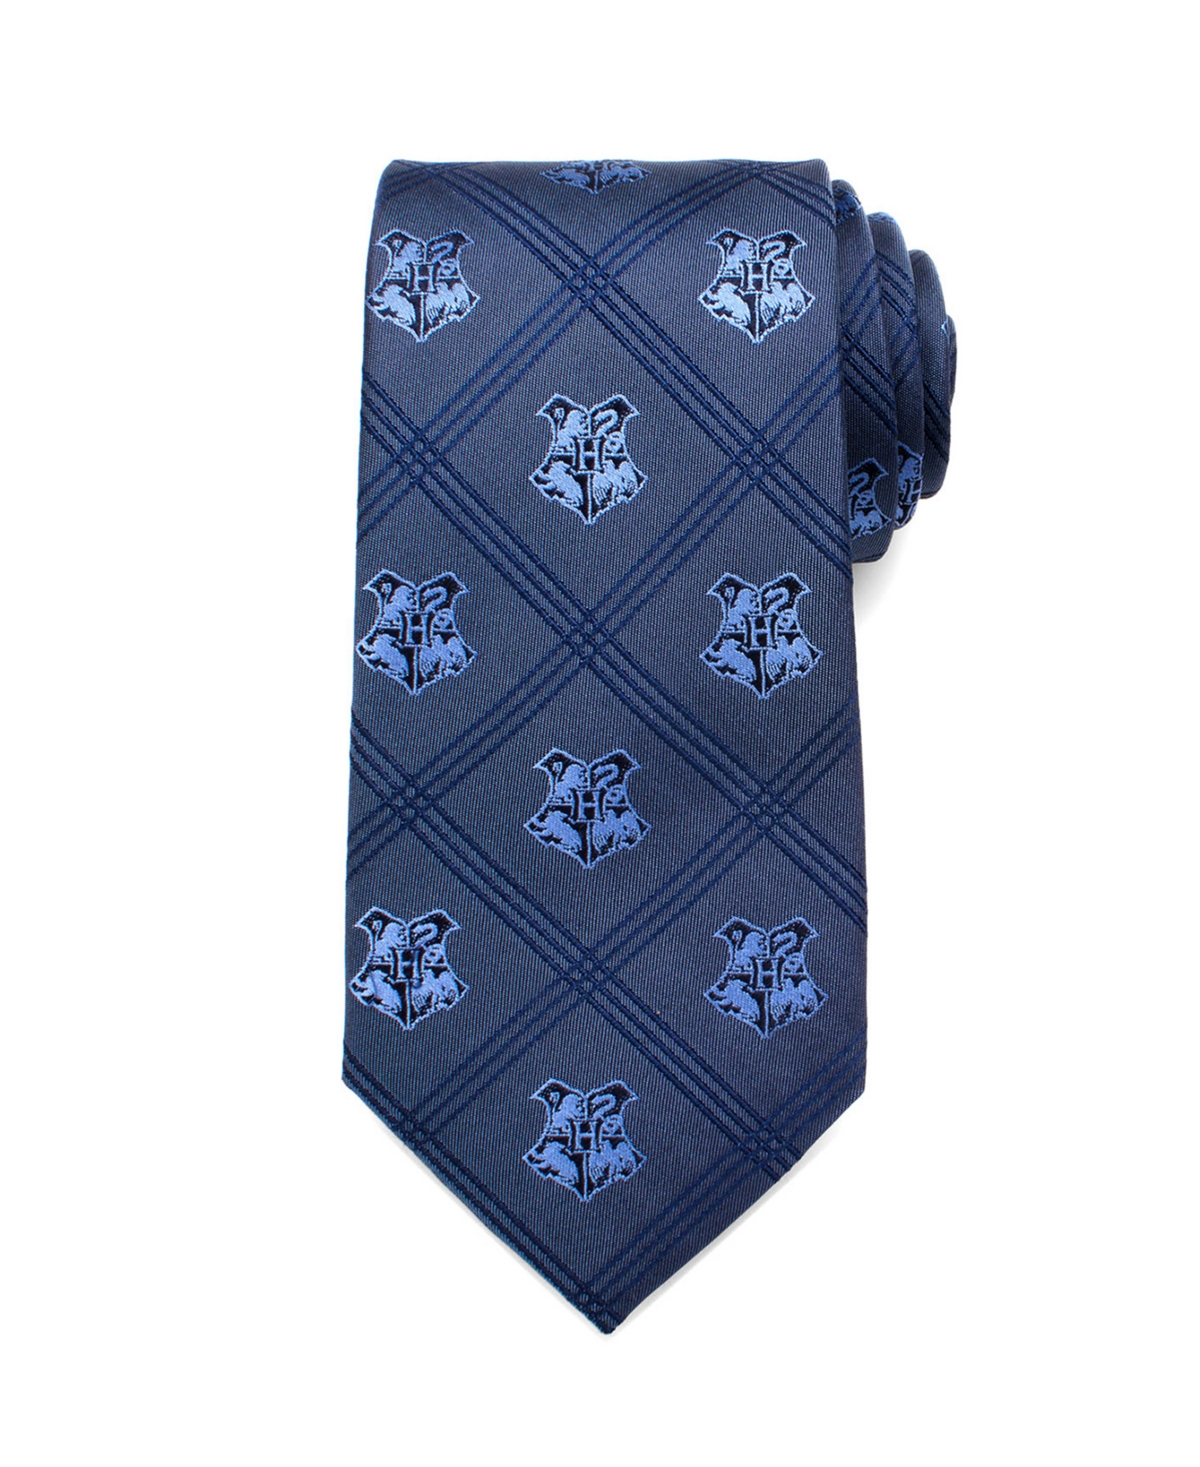 Hogwarts Plaid Men's Tie - Blue